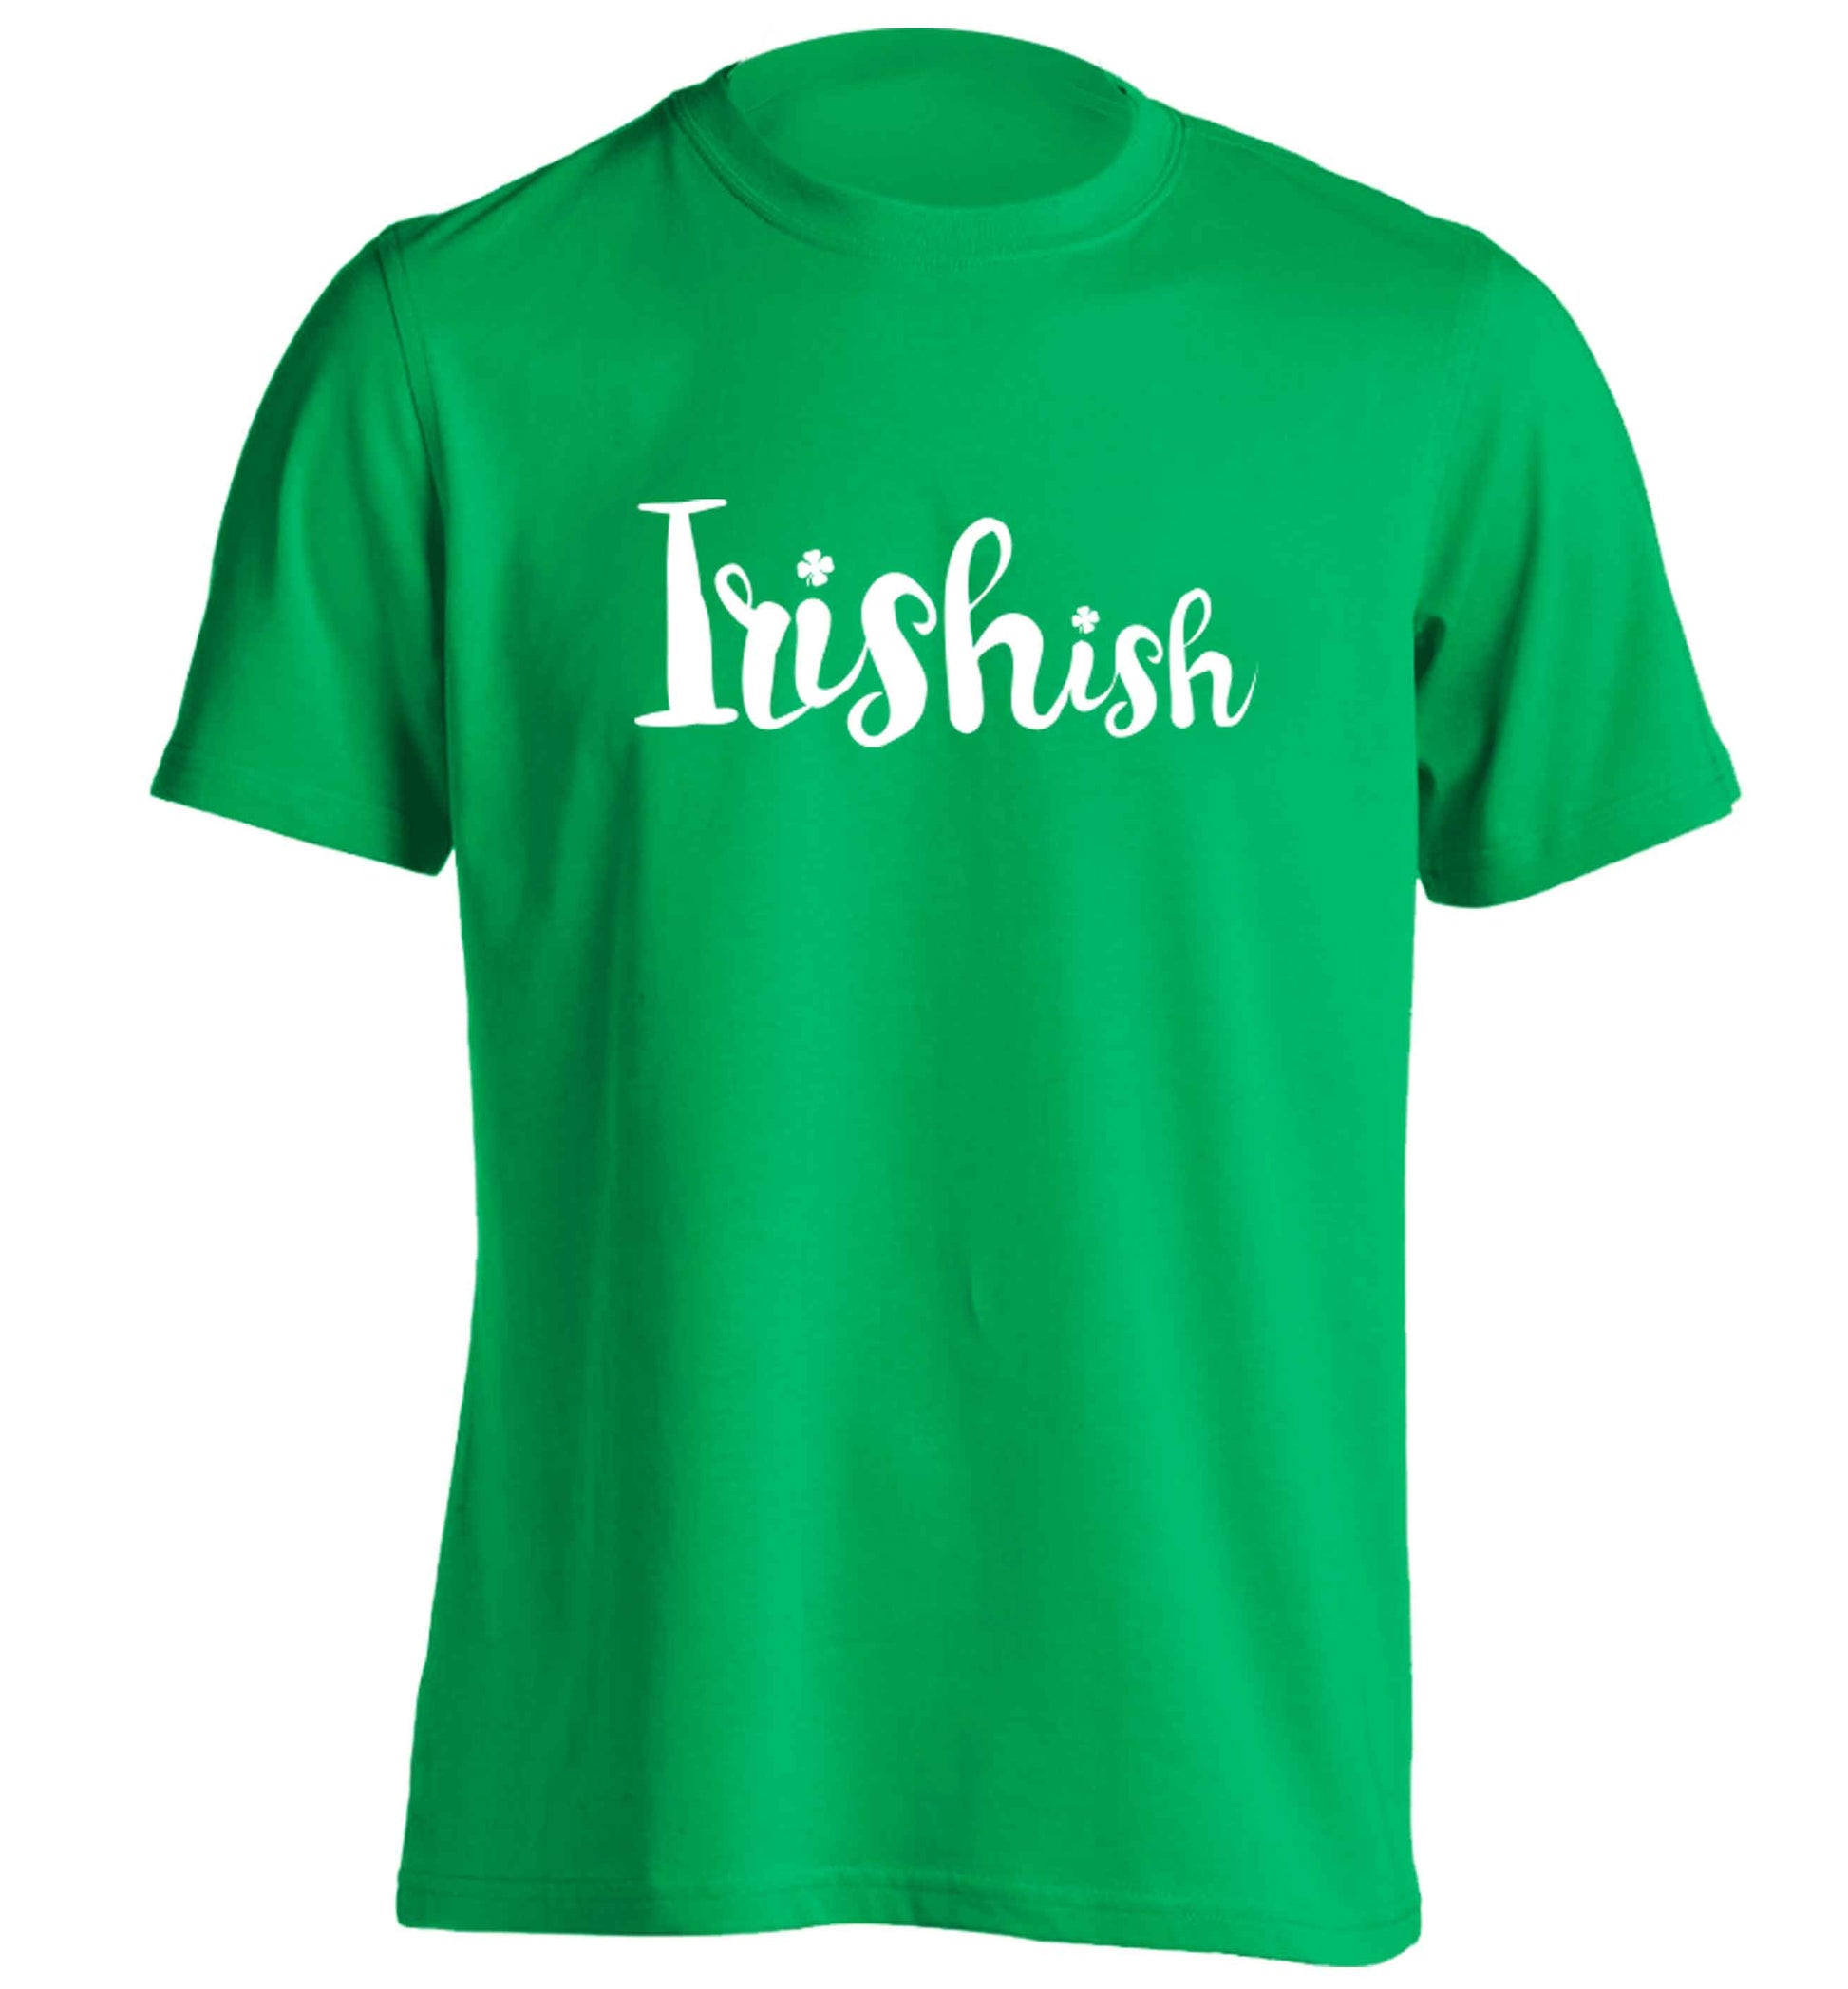 Irishish adults unisex green Tshirt 2XL